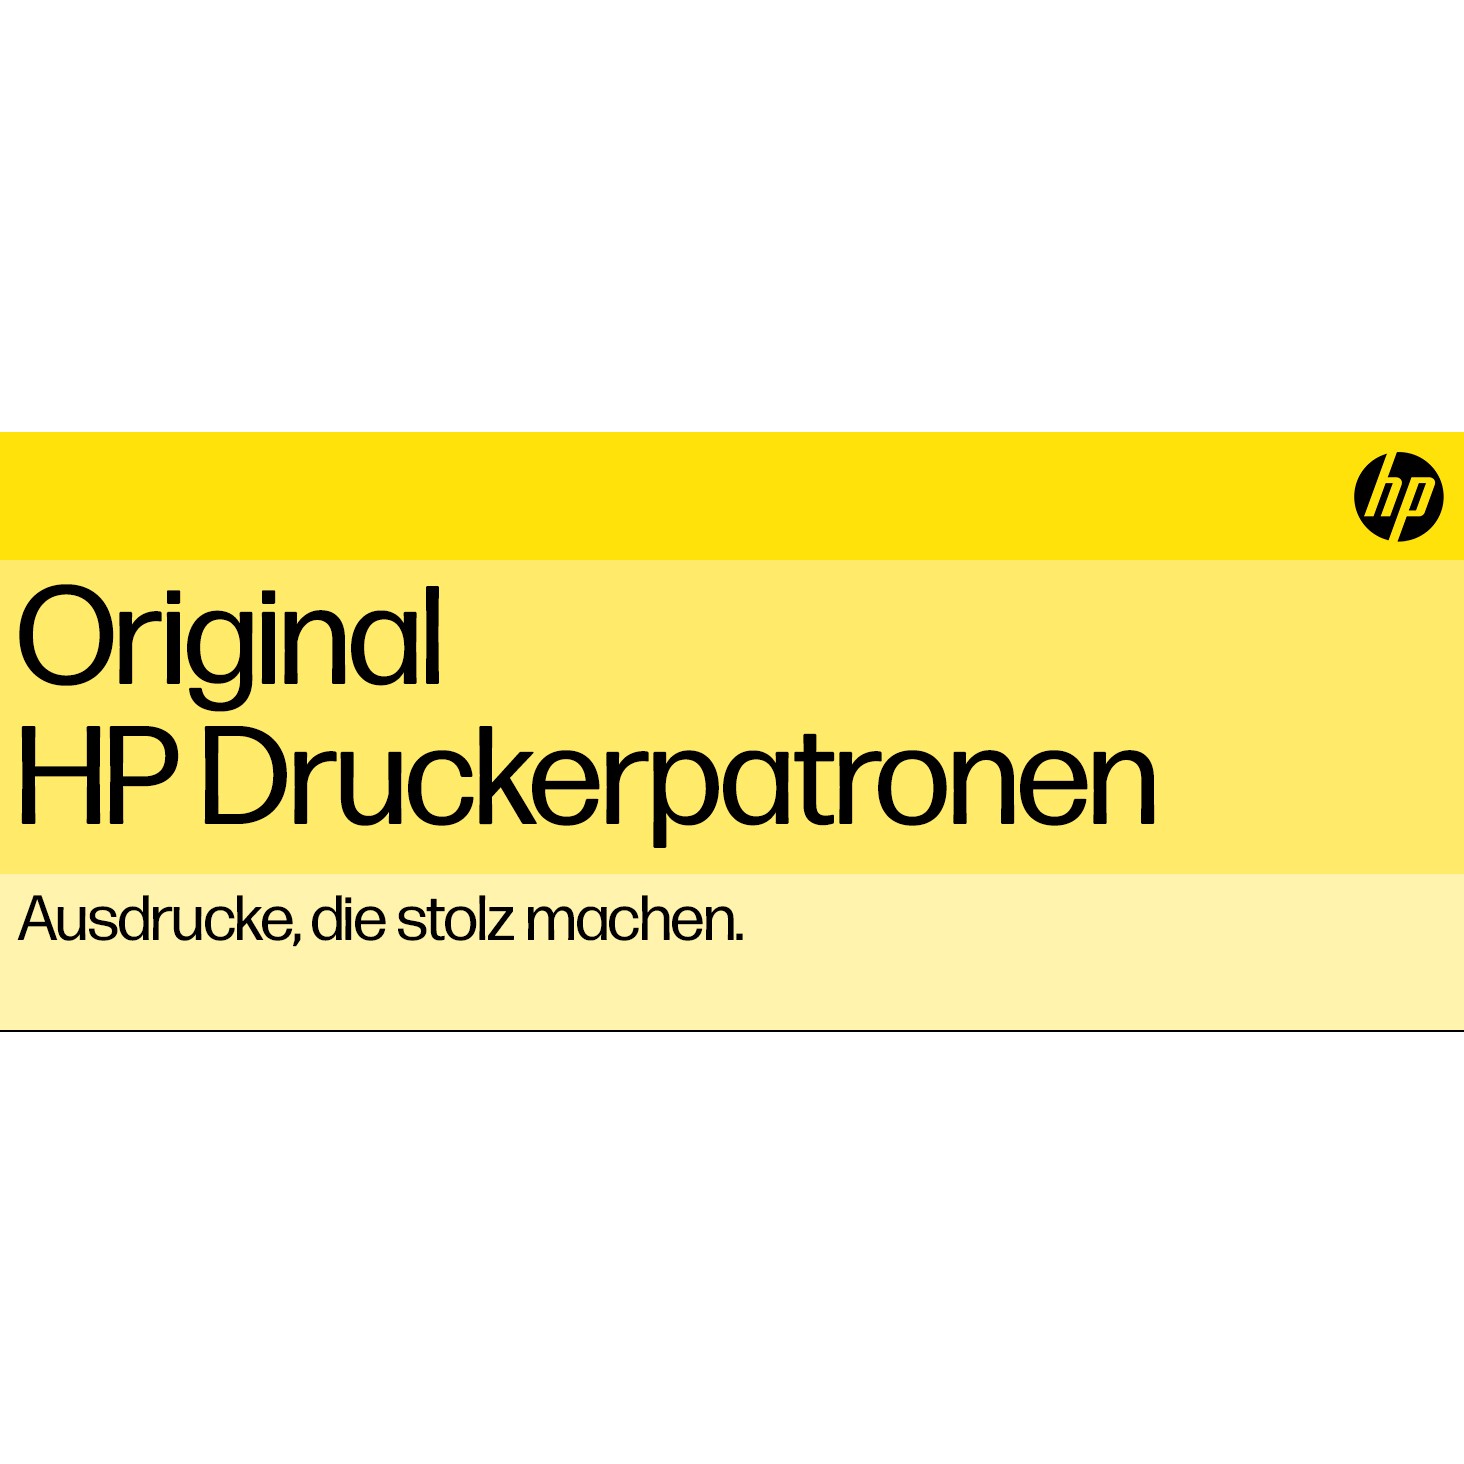 HP Tinte 304 N9K05AE Color (Cyan/Magenta/Gelb)